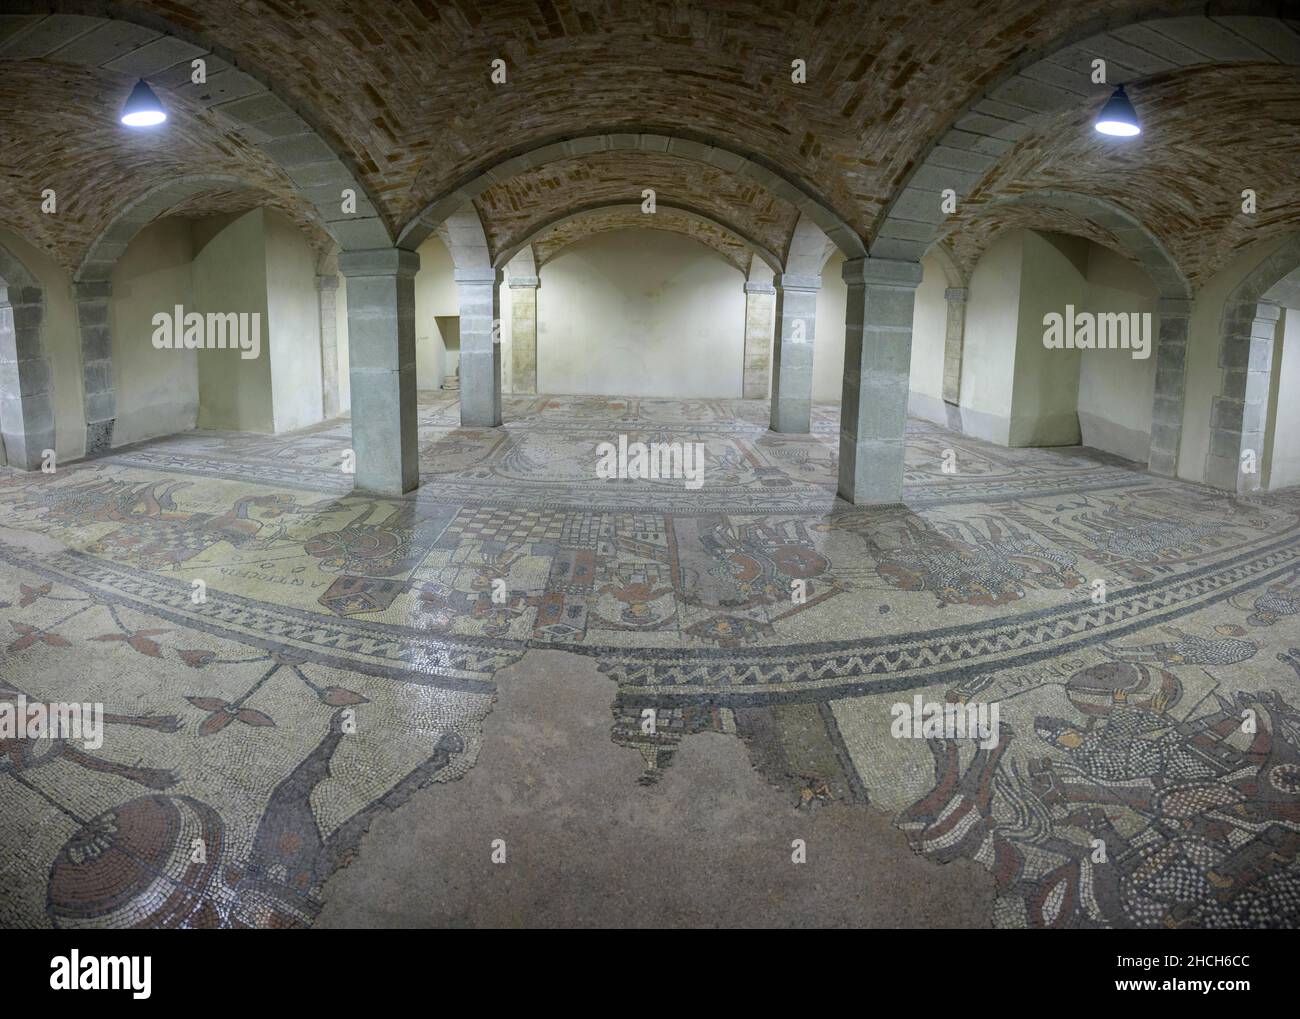 12th century mosaic floor in the Abbey of San Colombano, Bobbio, Piacenza, Italy Stock Photo